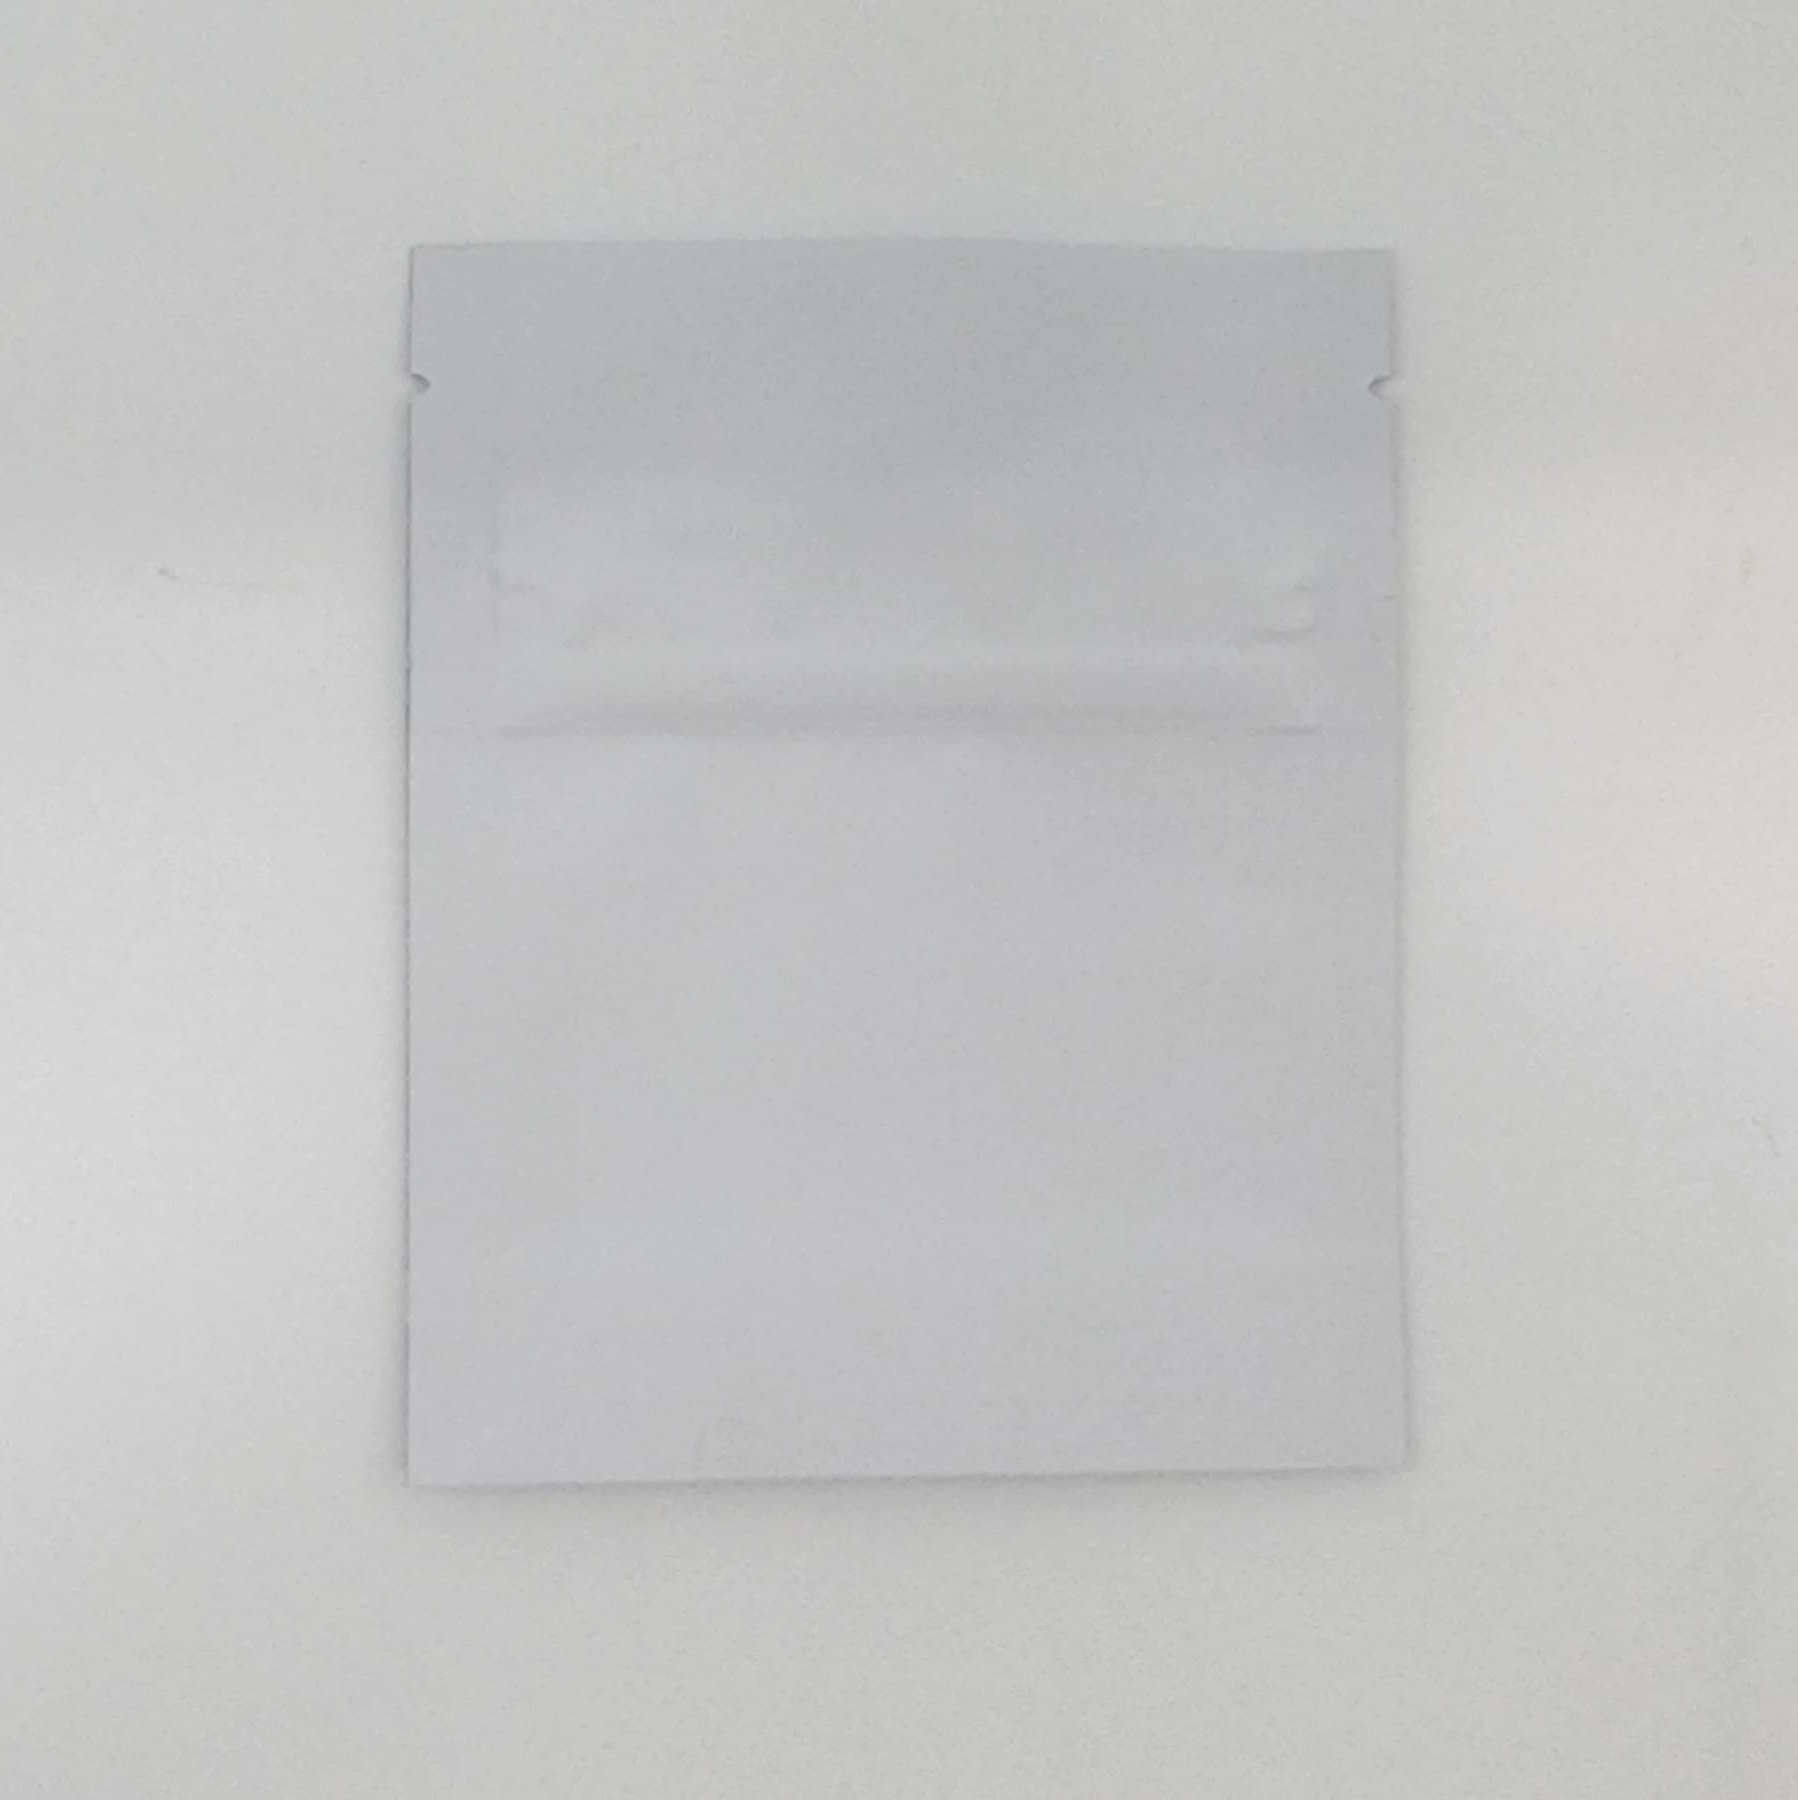 Paper Bag PM4 15.3 X 16.5 